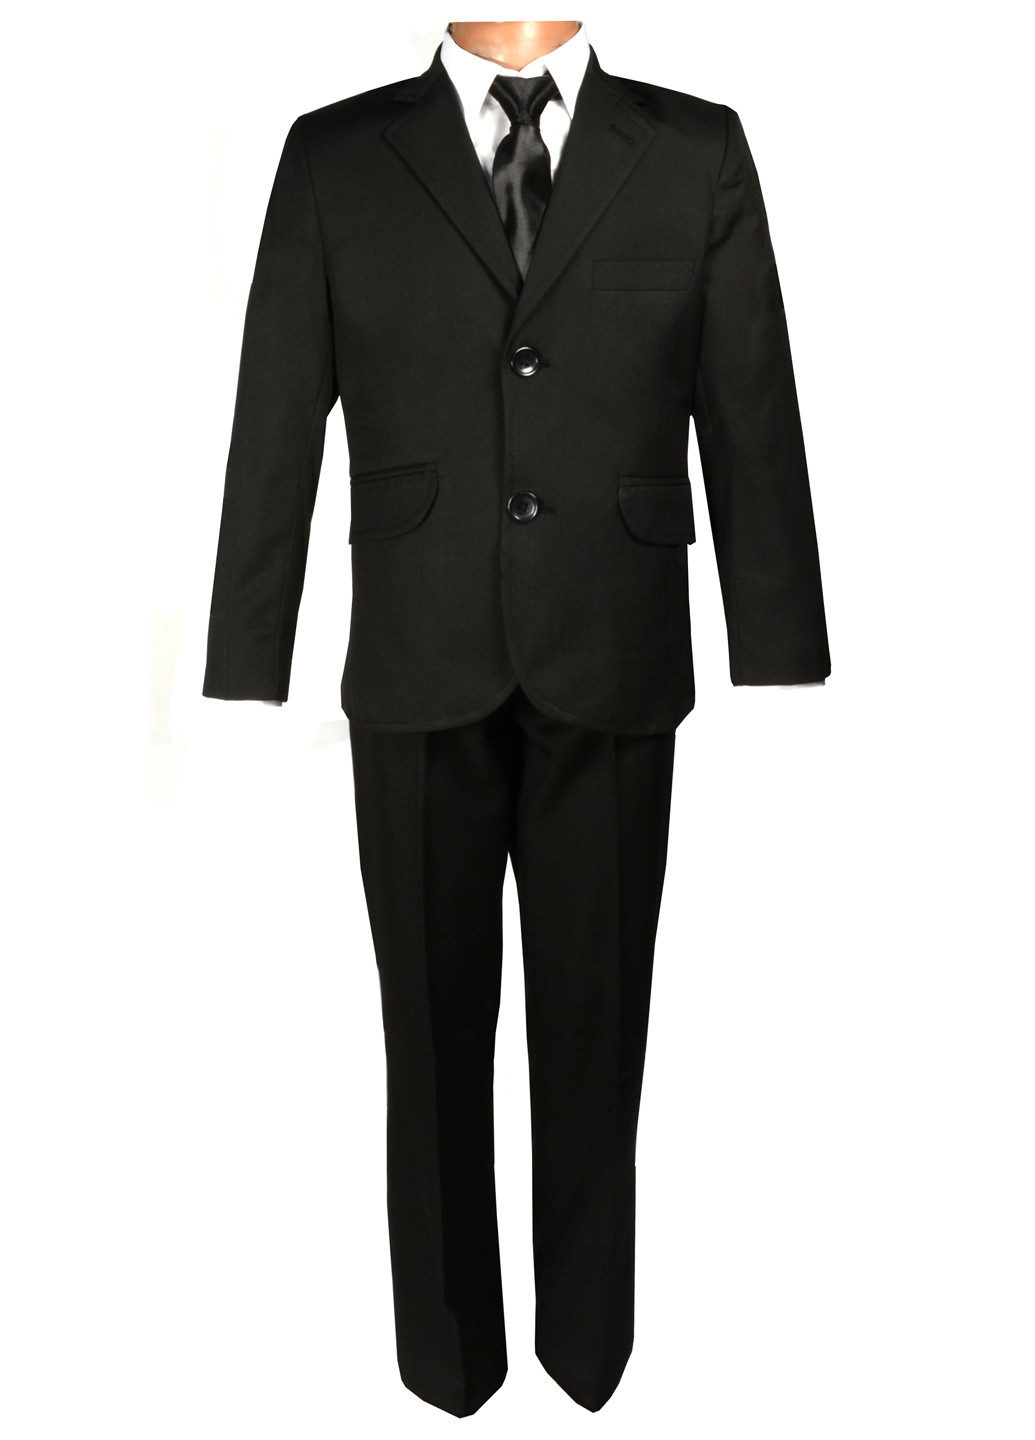 Черный демисезонный костюм (пиджак, брюки, галстук) брючный Jnf